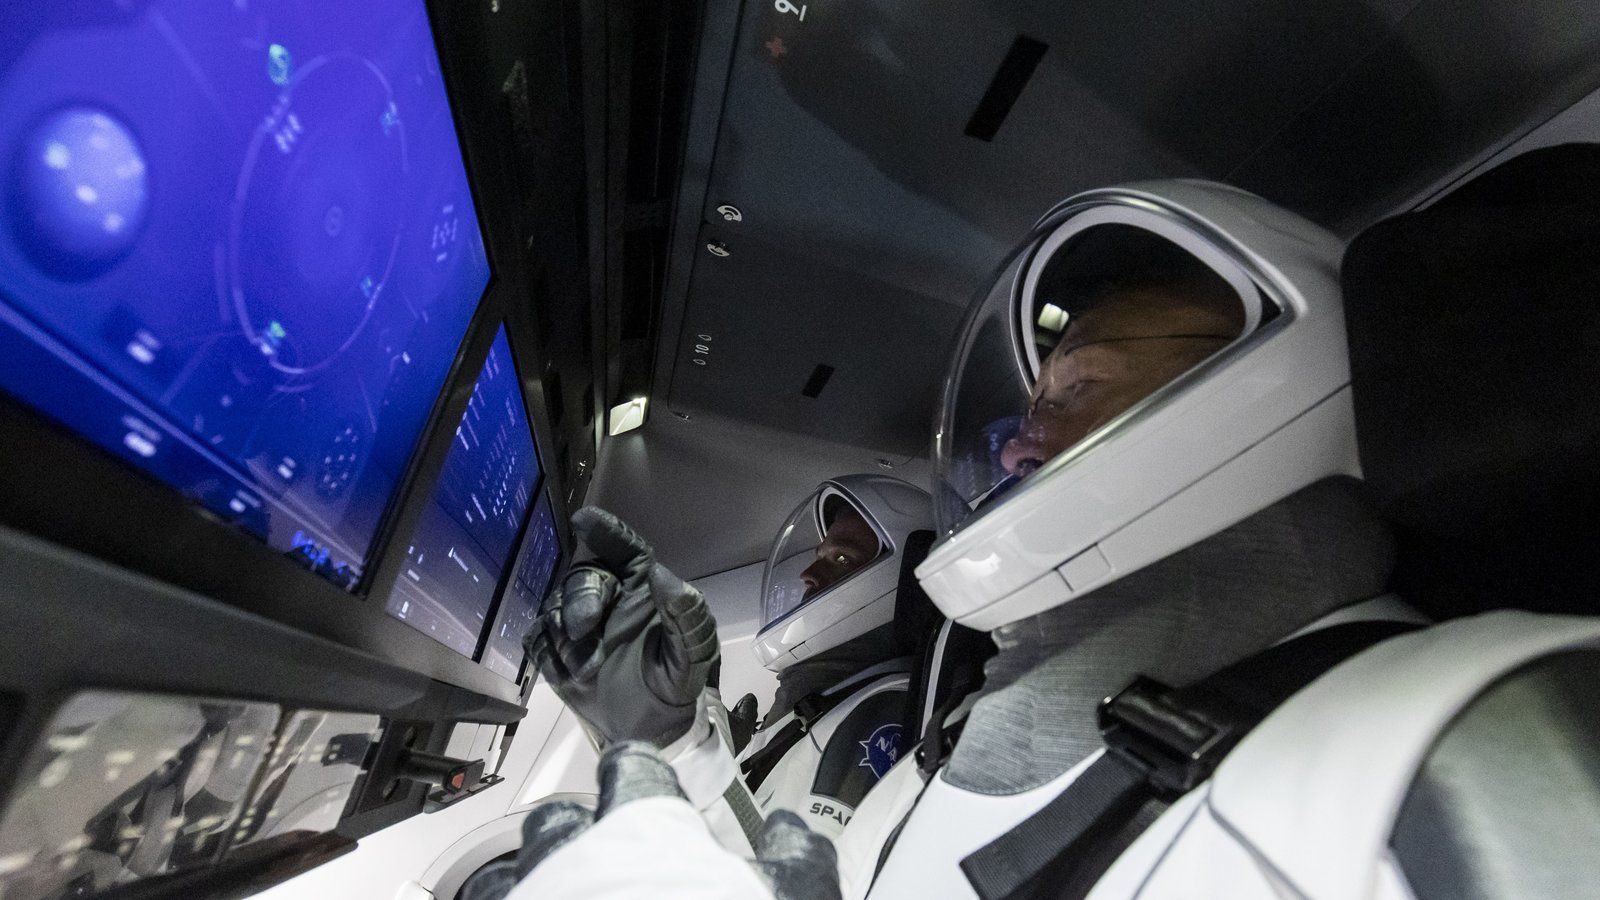 Take a tour inside the SpaceX Crew Dragon spacecraft NASA Astronauts w